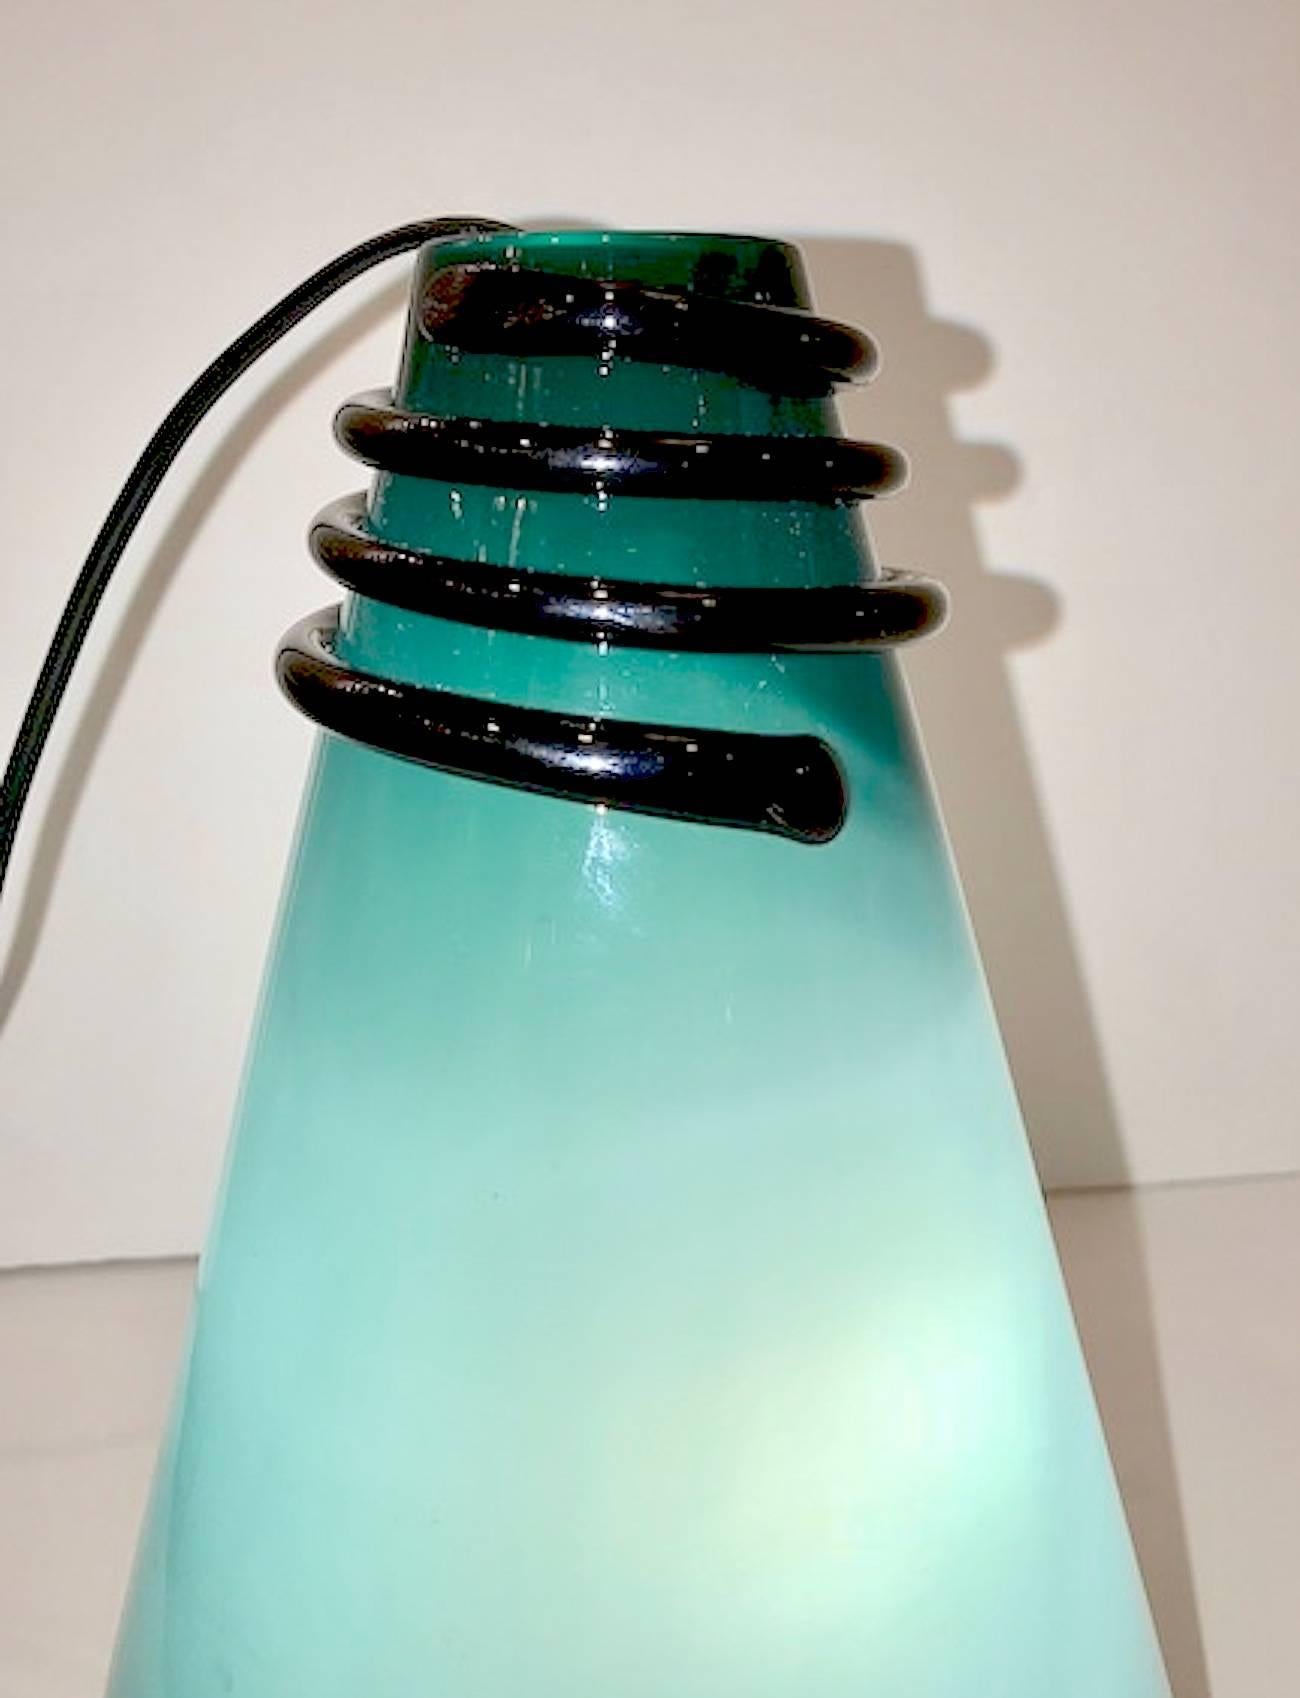 Eine signierte VeArt Venezia grün über weißem Glas mit schwarzem Akzent Kegelvase oder Tischlampe von 1983 im Menphis-Stil.